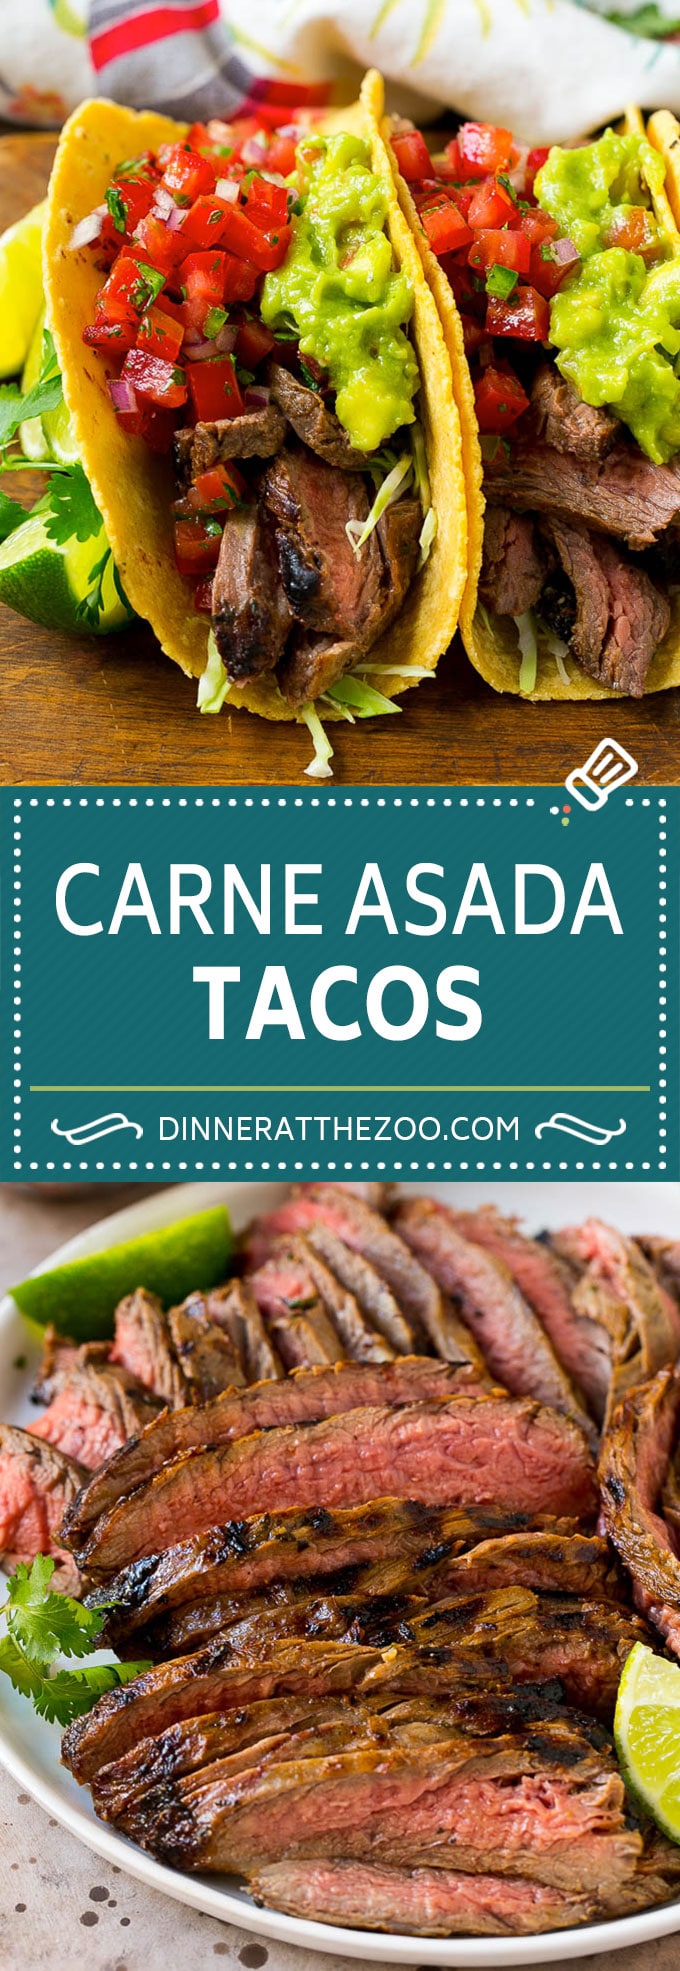 Receta de Tacos Carne Asada |  Tacos de carne |  Tacos Steak |  Carne Asada #steak #meat #beef #tacos #avocate #dinner #dinneratthezoo